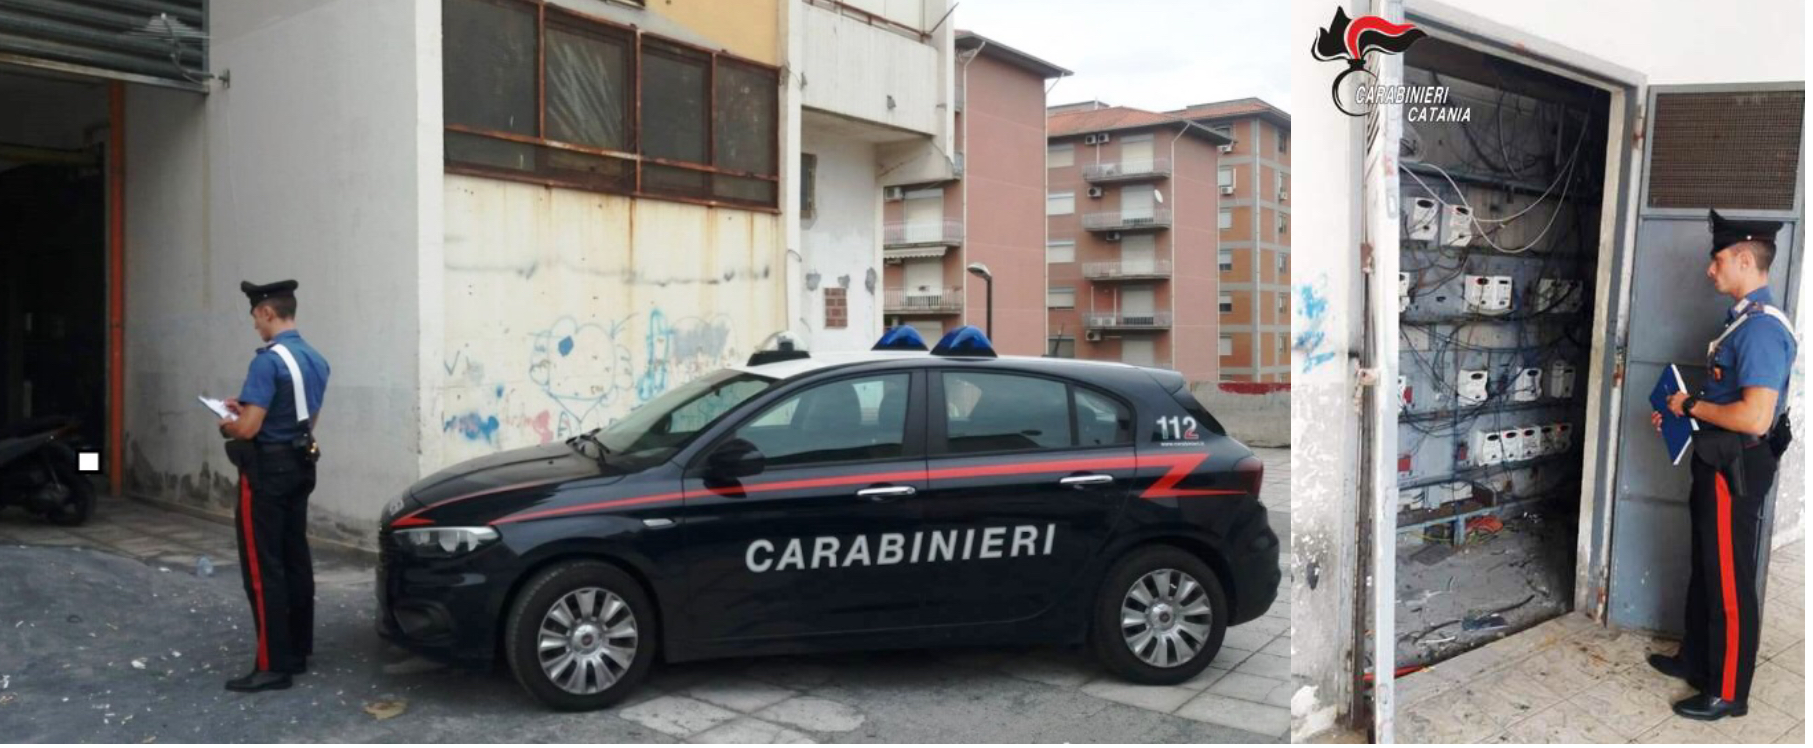 Catania, controlli a tappeto dei carabinieri a Librino